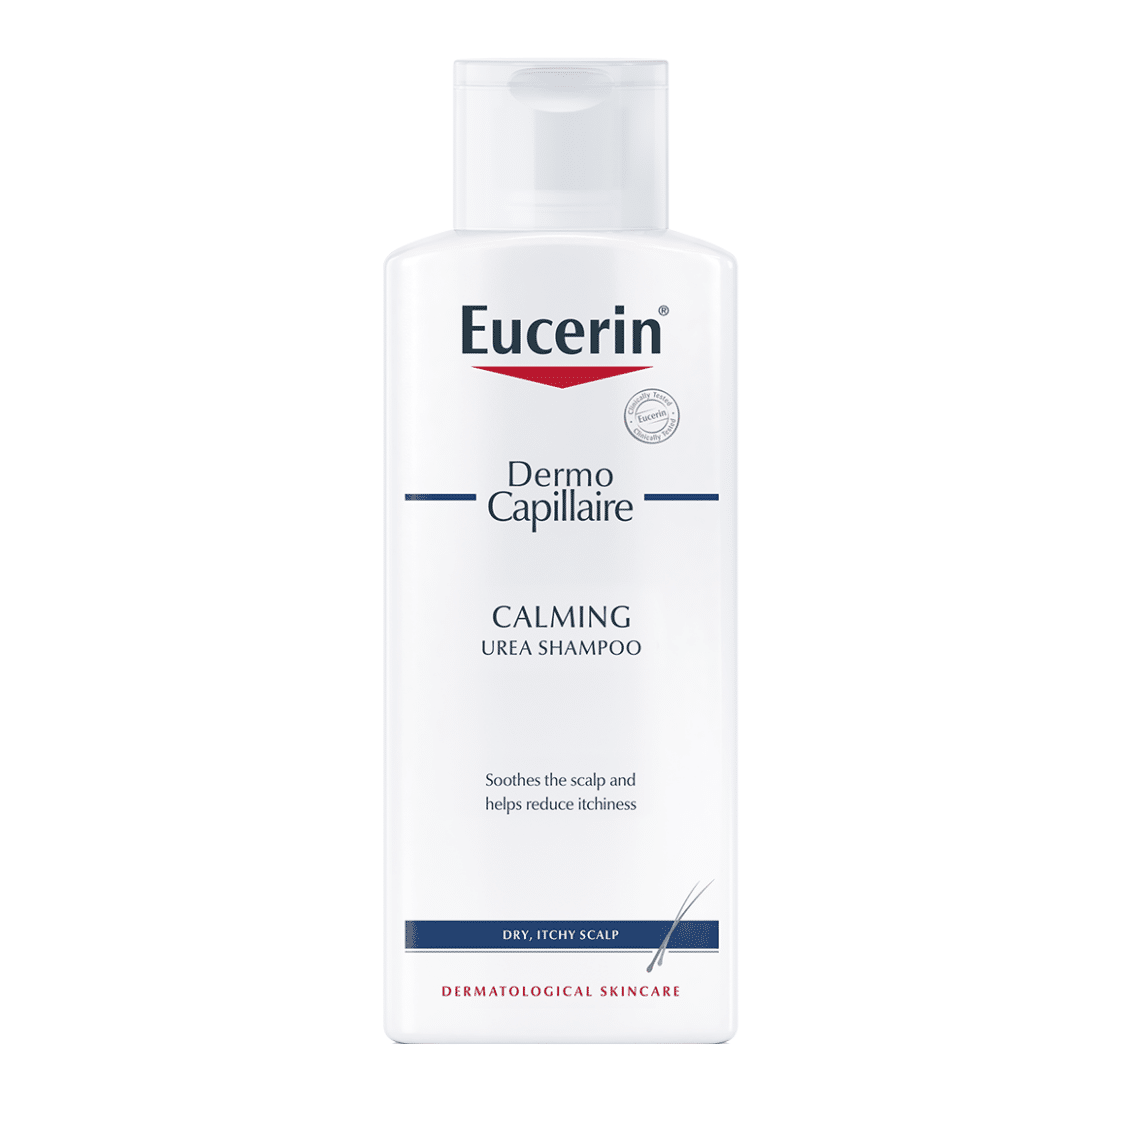 Eucerin Dermocapillaire Kalm Urea Shampoo 250 ml